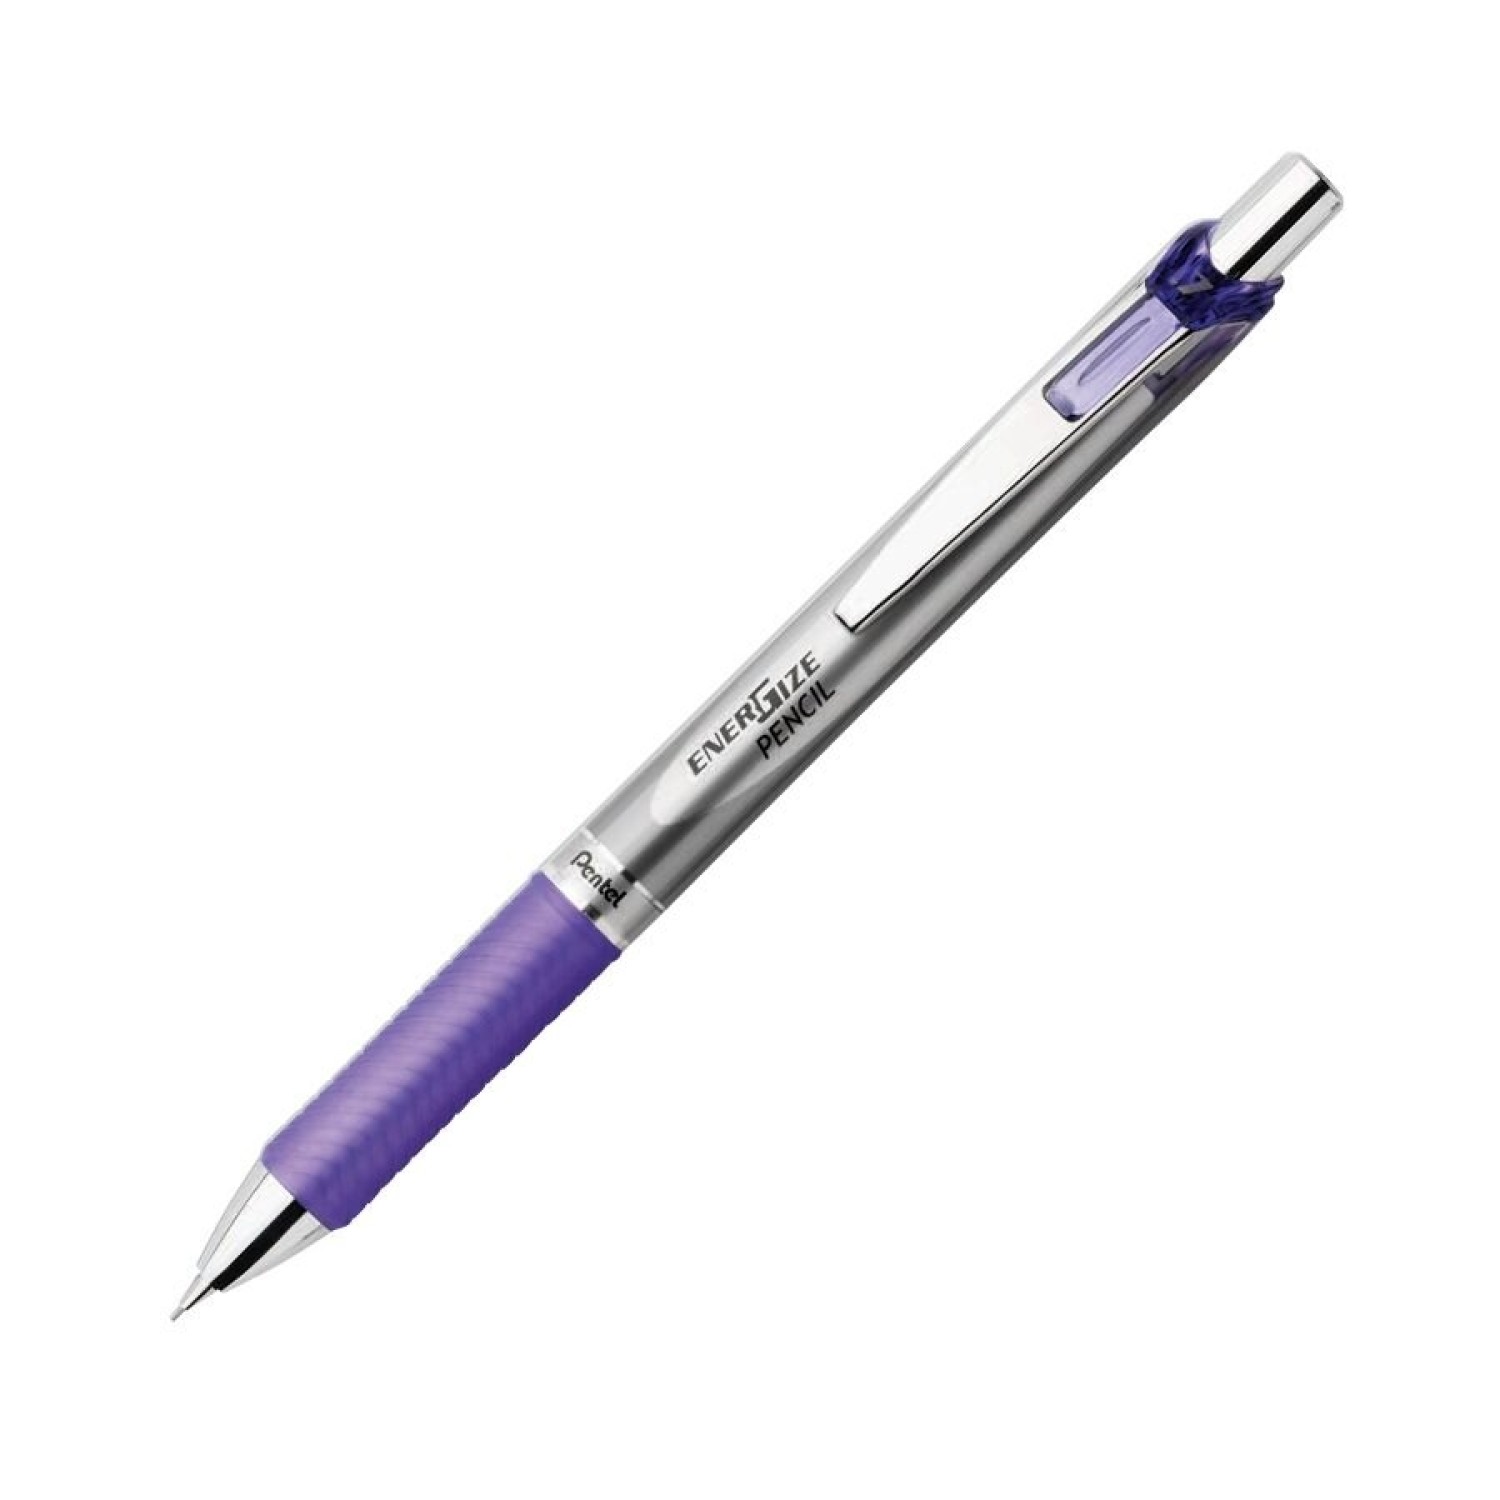 Pentel 0.7 механический карандаш. BIC механический карандаш 2мм Criterium. Карандаш механический 0,5 мм. Карандаш 0.7 мм. Карандаш 0.7